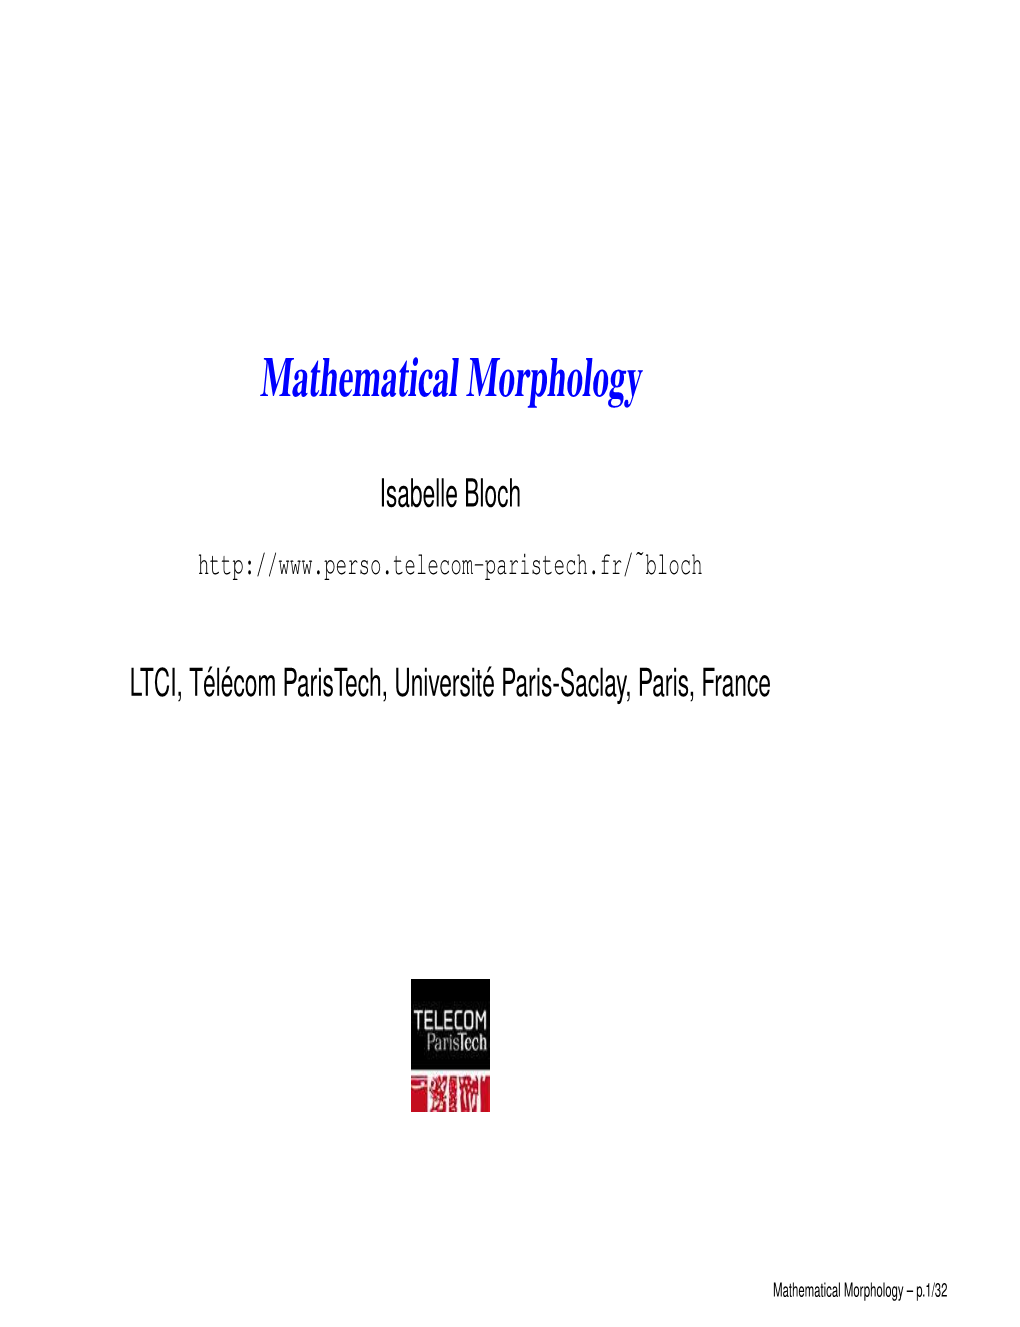 Mathematical Morphology – P.1/32 Bloch ˜ ´ E Paris-Saclay, Paris, France Isabelle Bloch